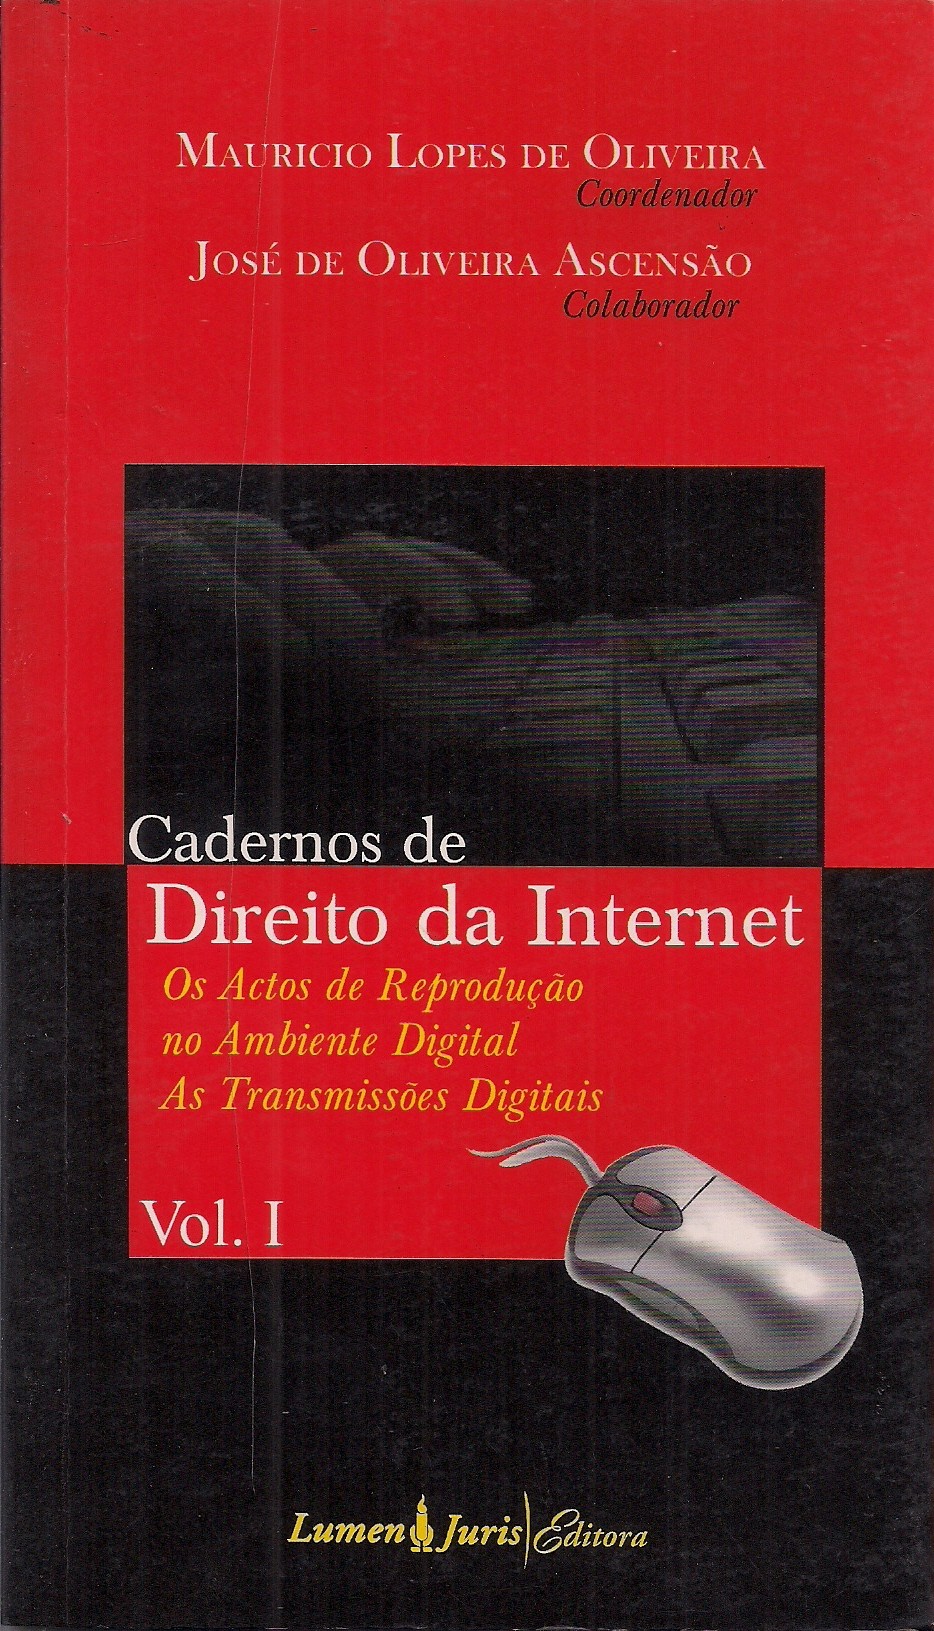 Foto 1 - Cadernos de Direito da Internet - Vol. I - Os Actos de Reprodução no Ambiente Digital as Transmissõe